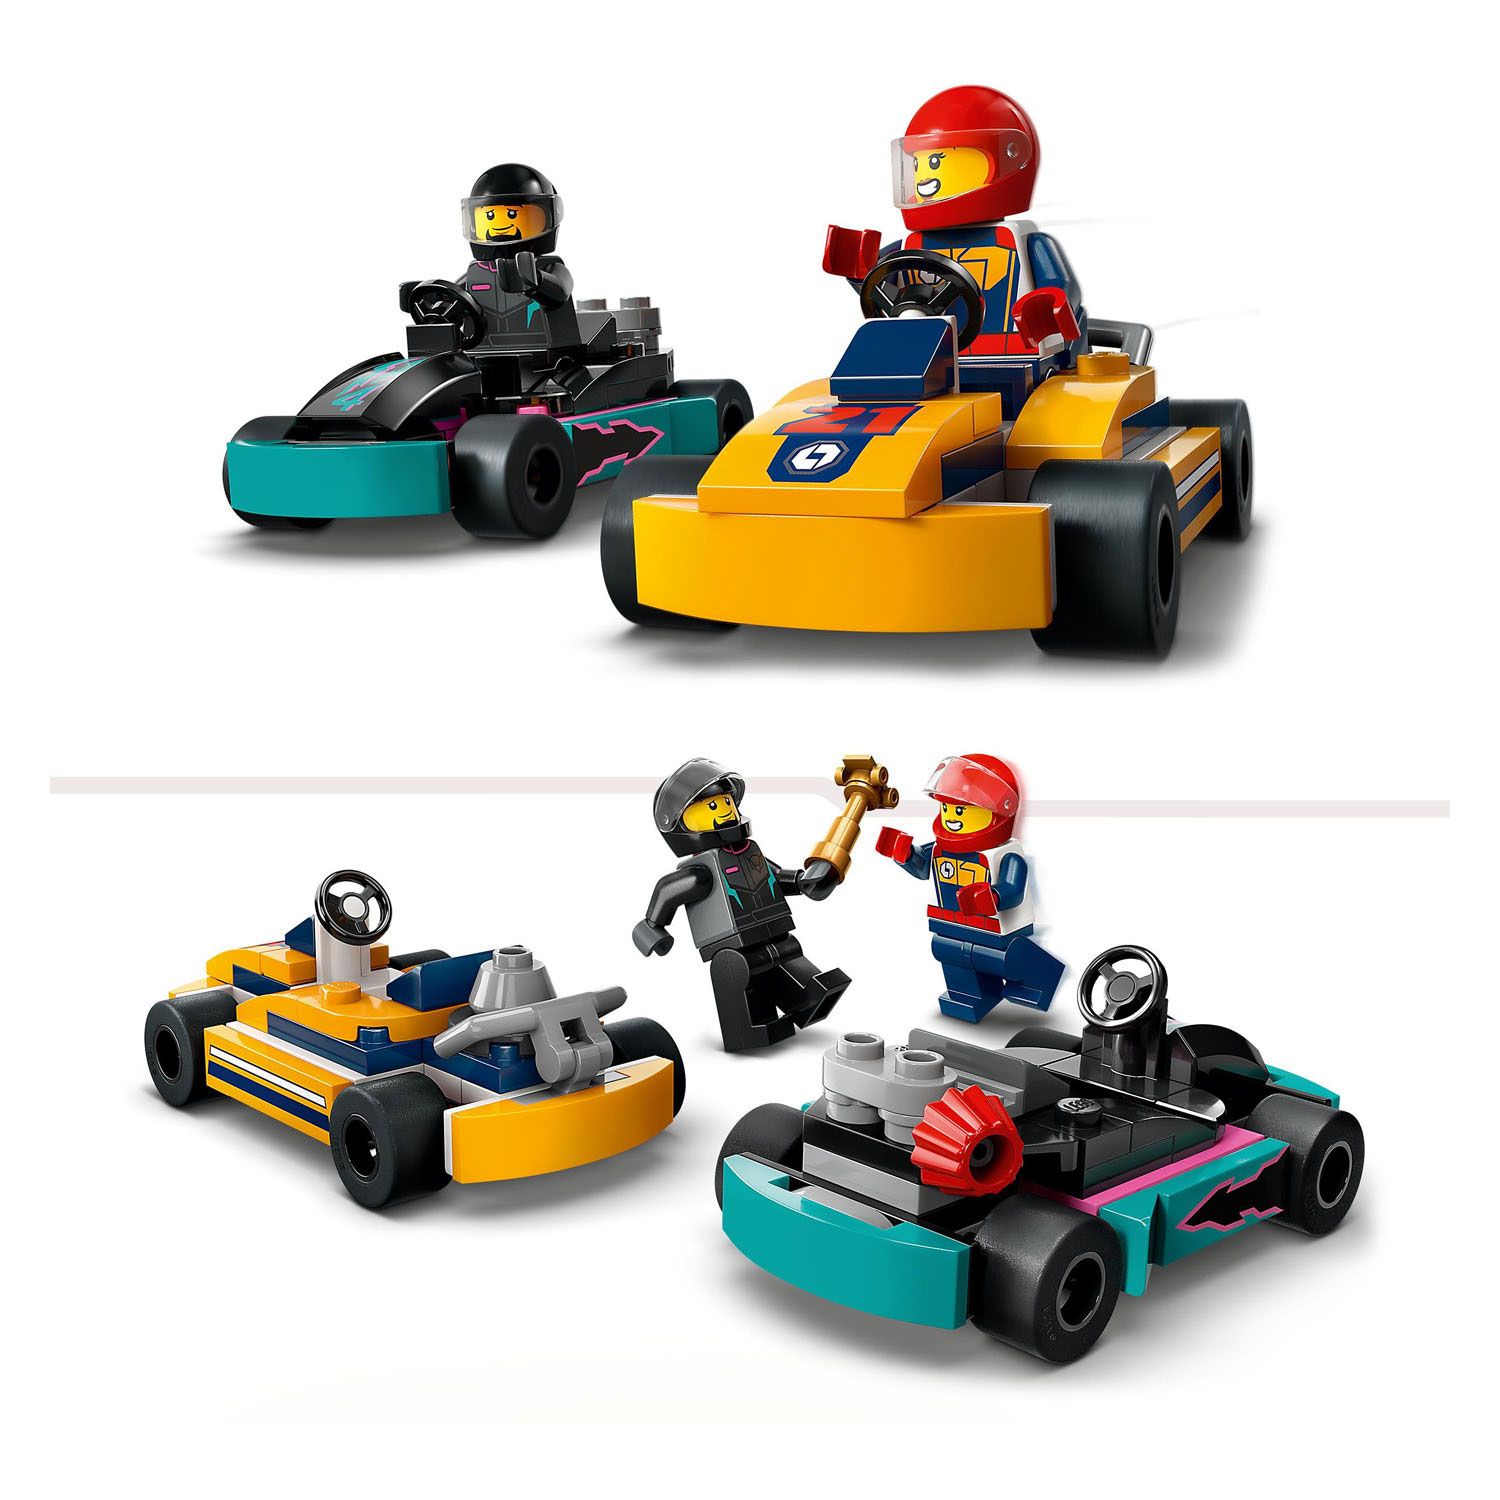 LEGO City 60400 Karts und Rennfahrer